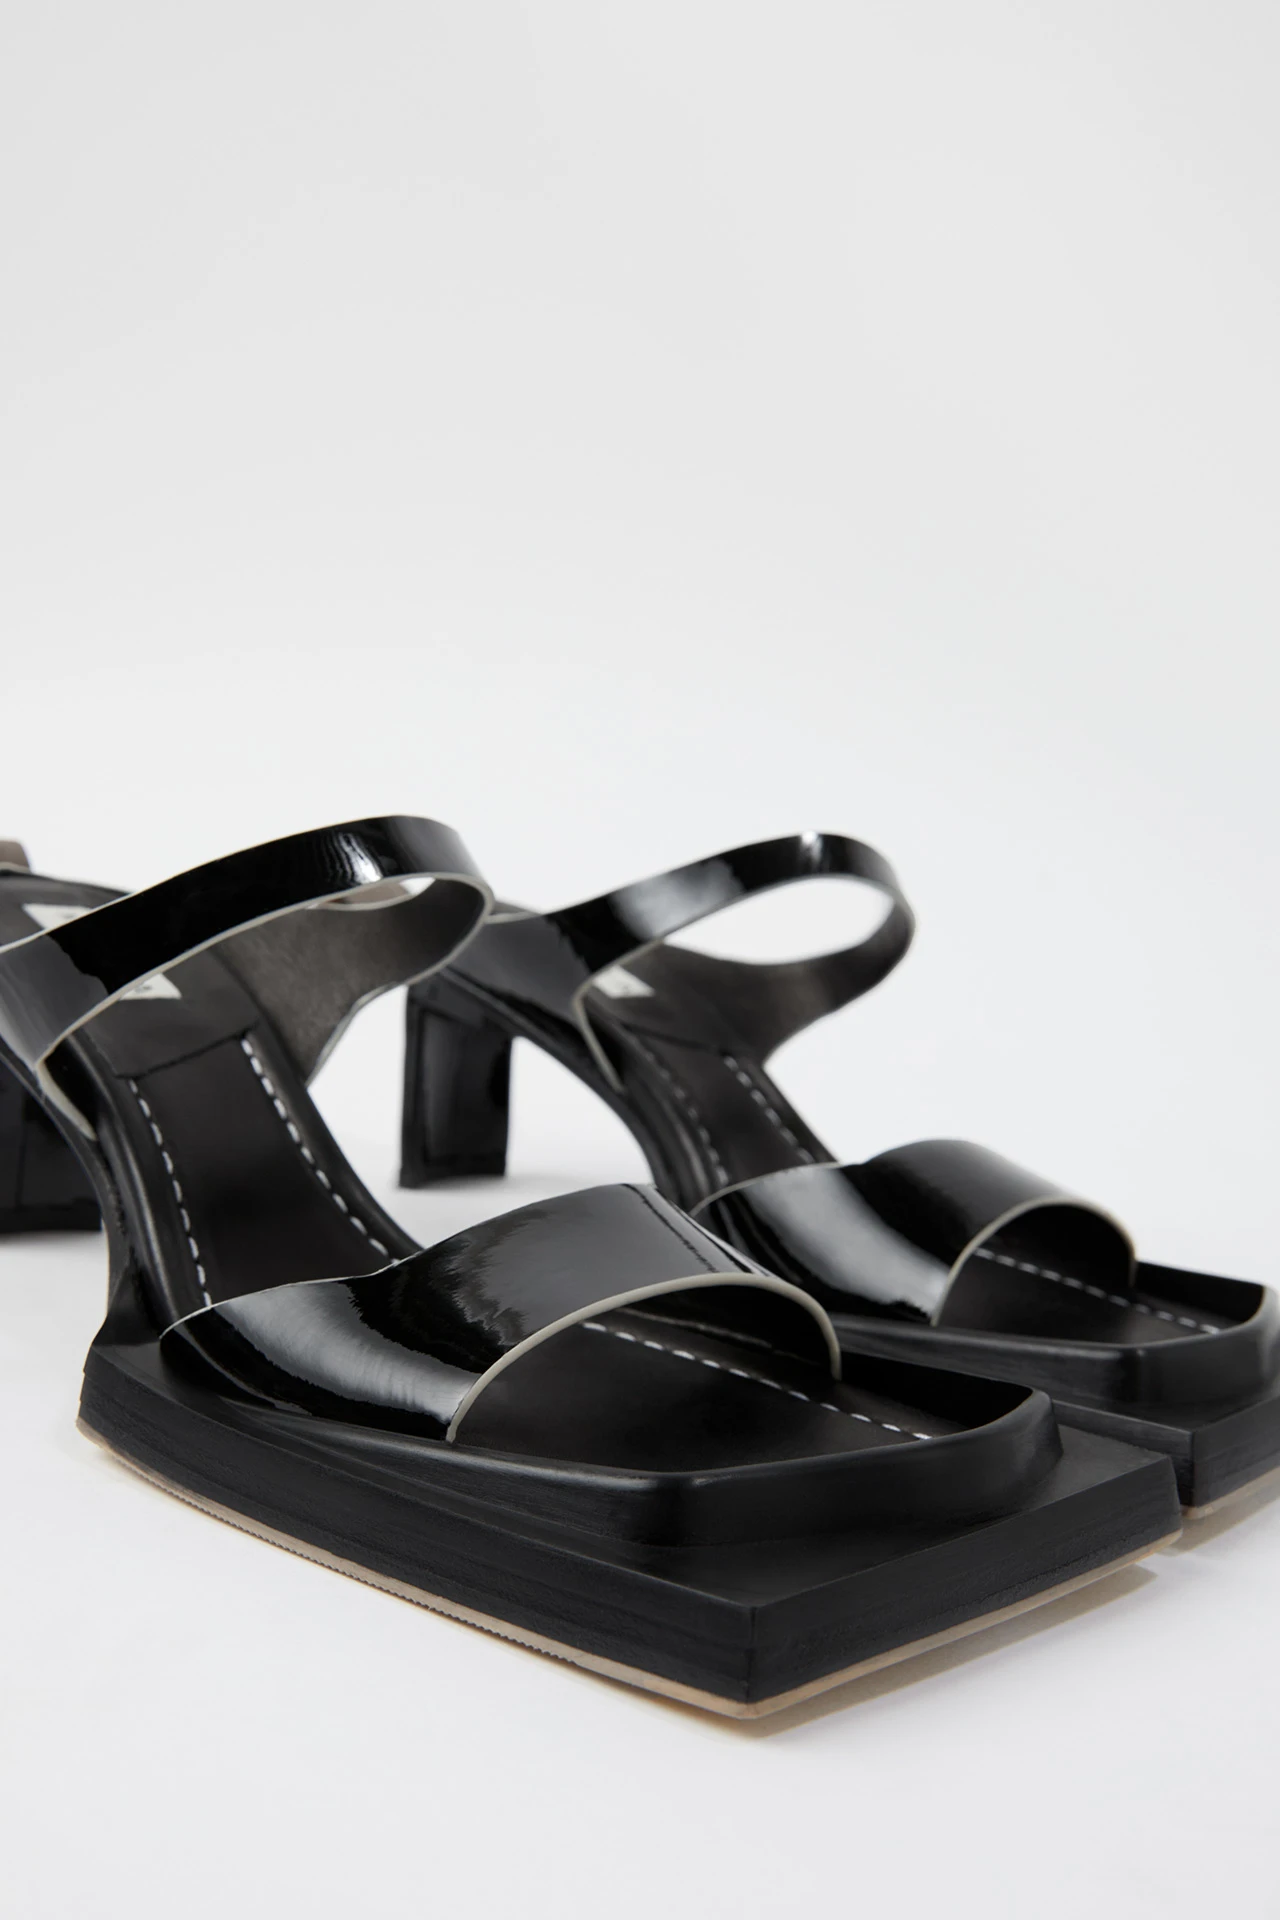 Miista-ren-black-sandals-02